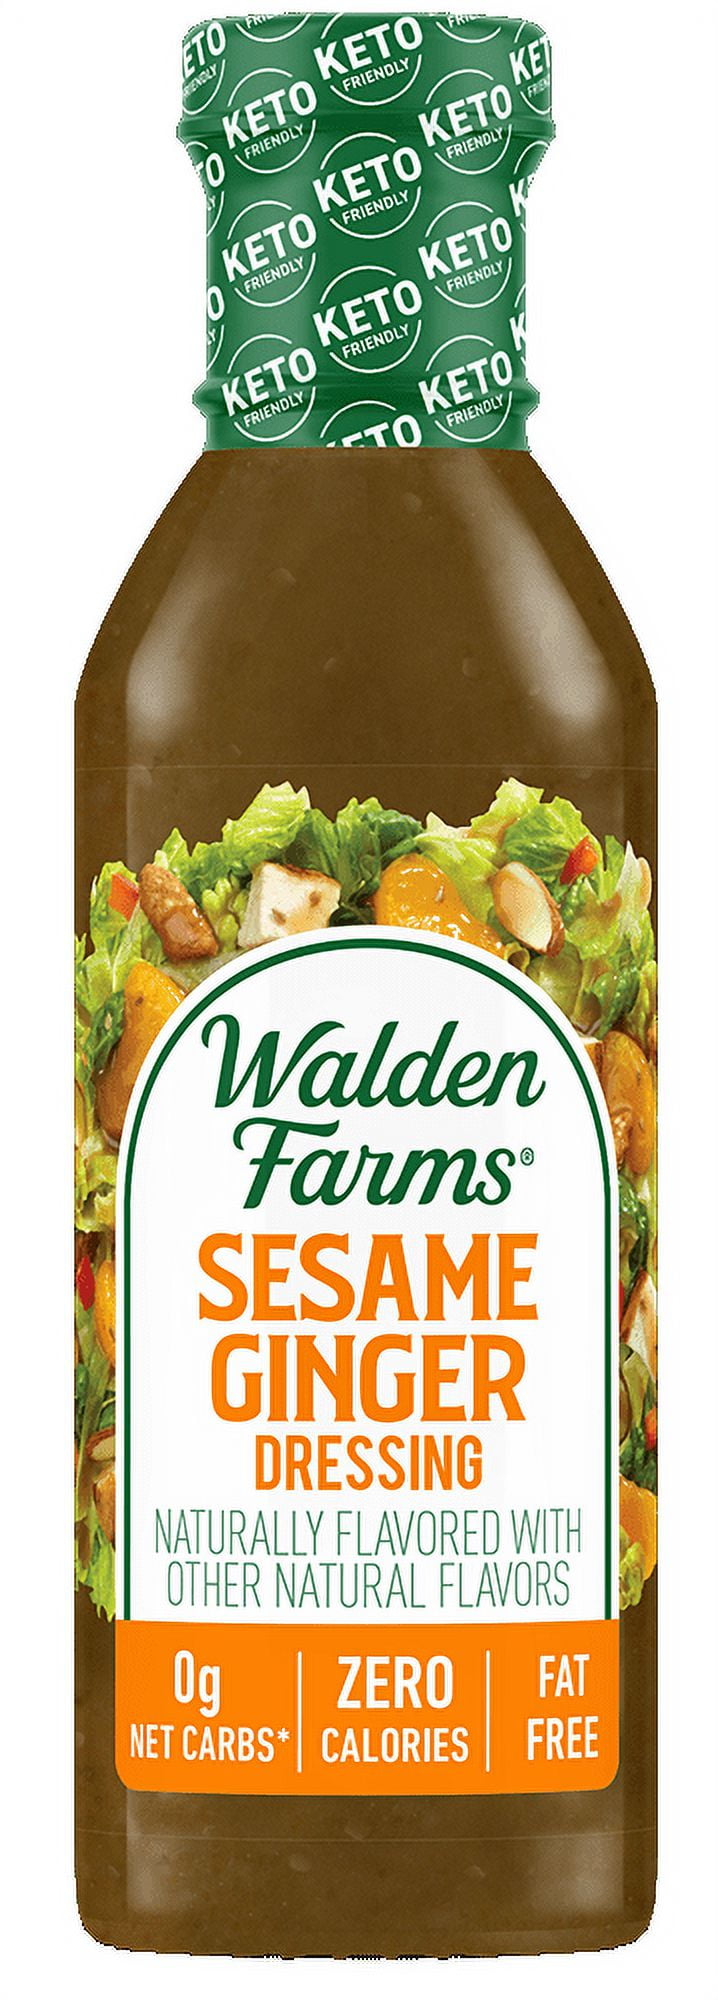 Walden Farms Sesame Ginger Dressing 12 fl oz